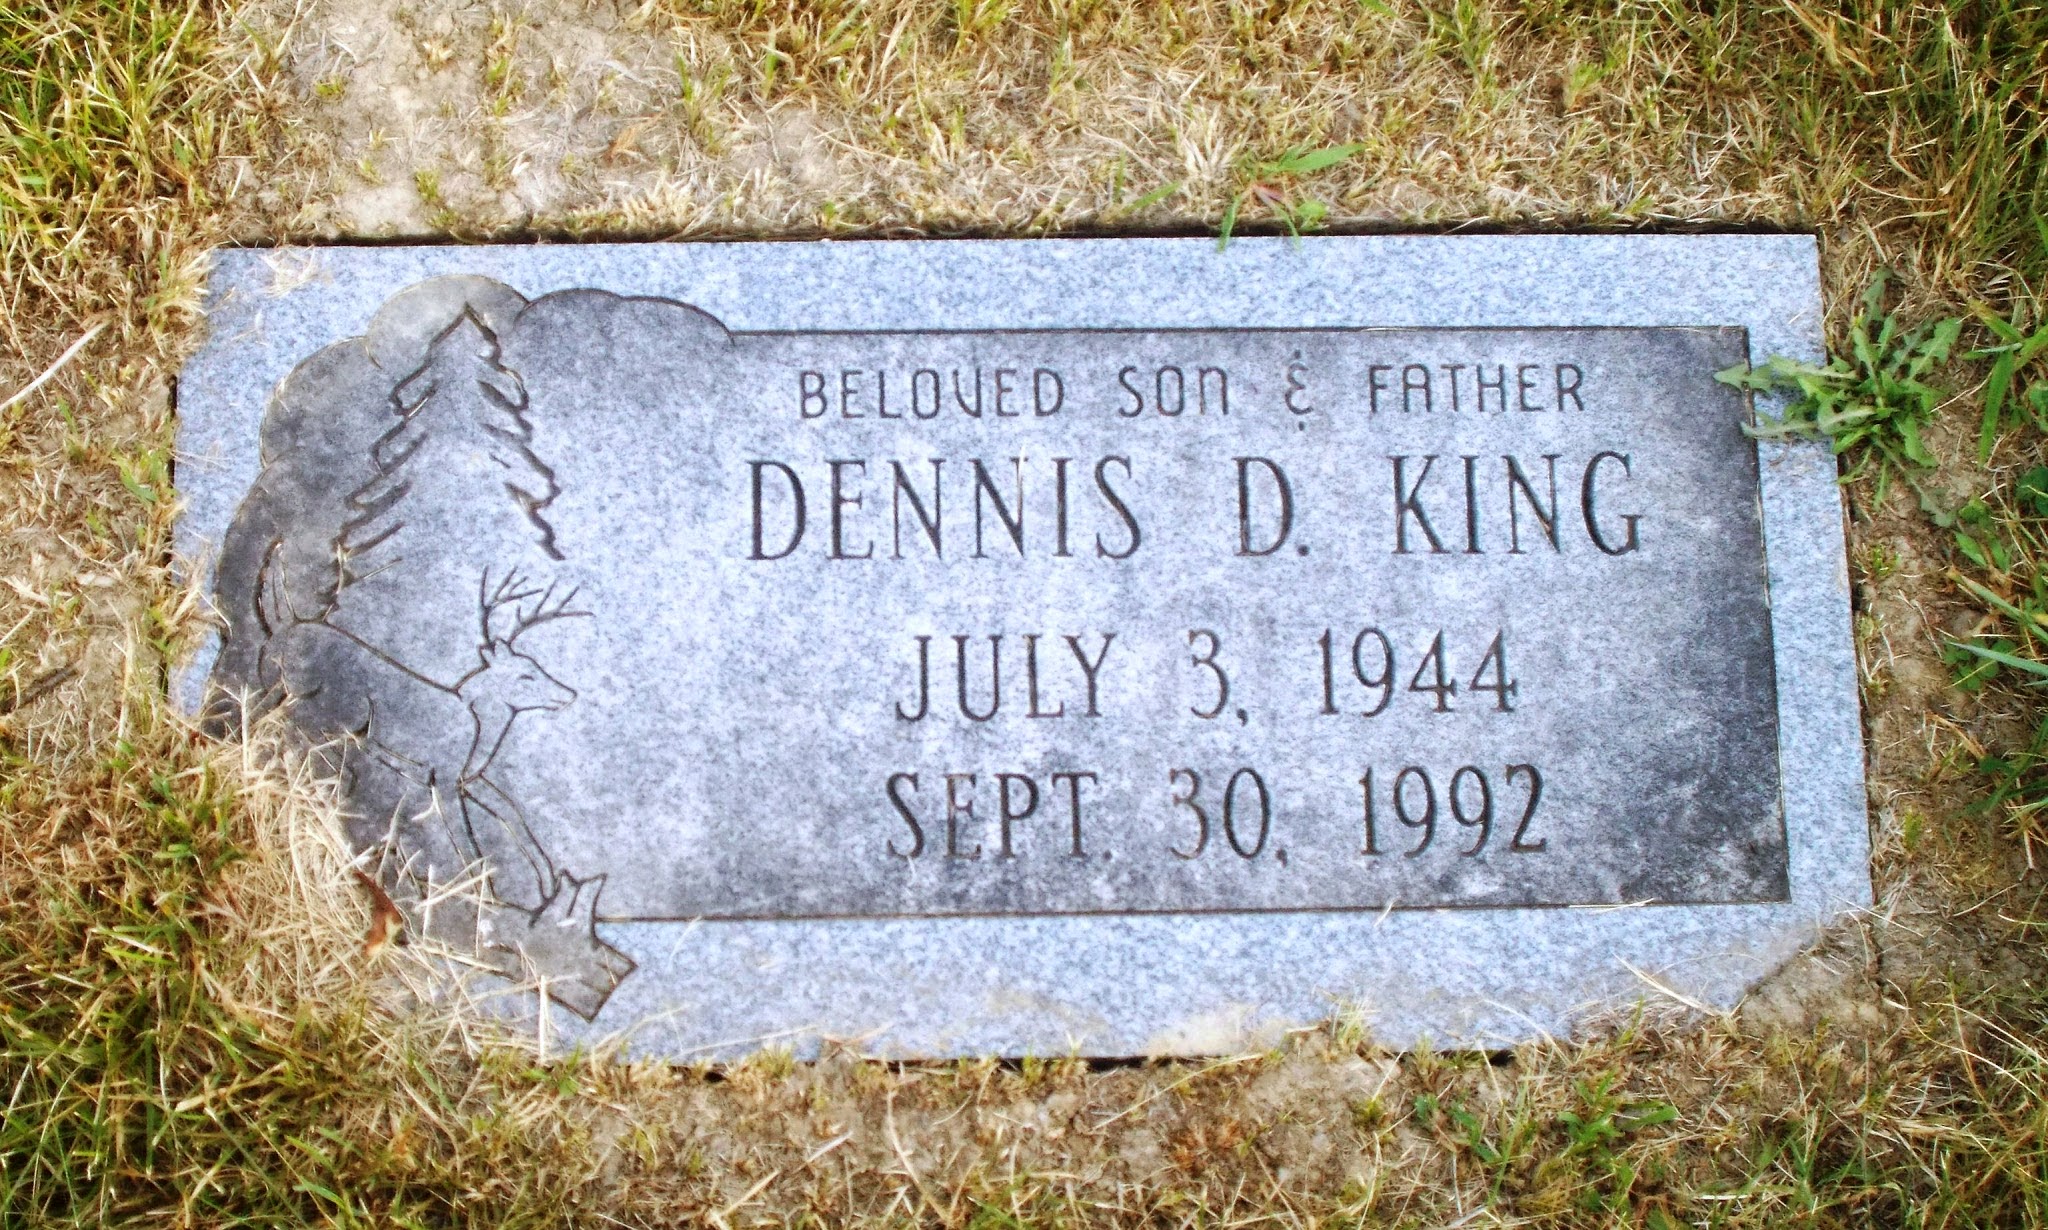 Dennis D King